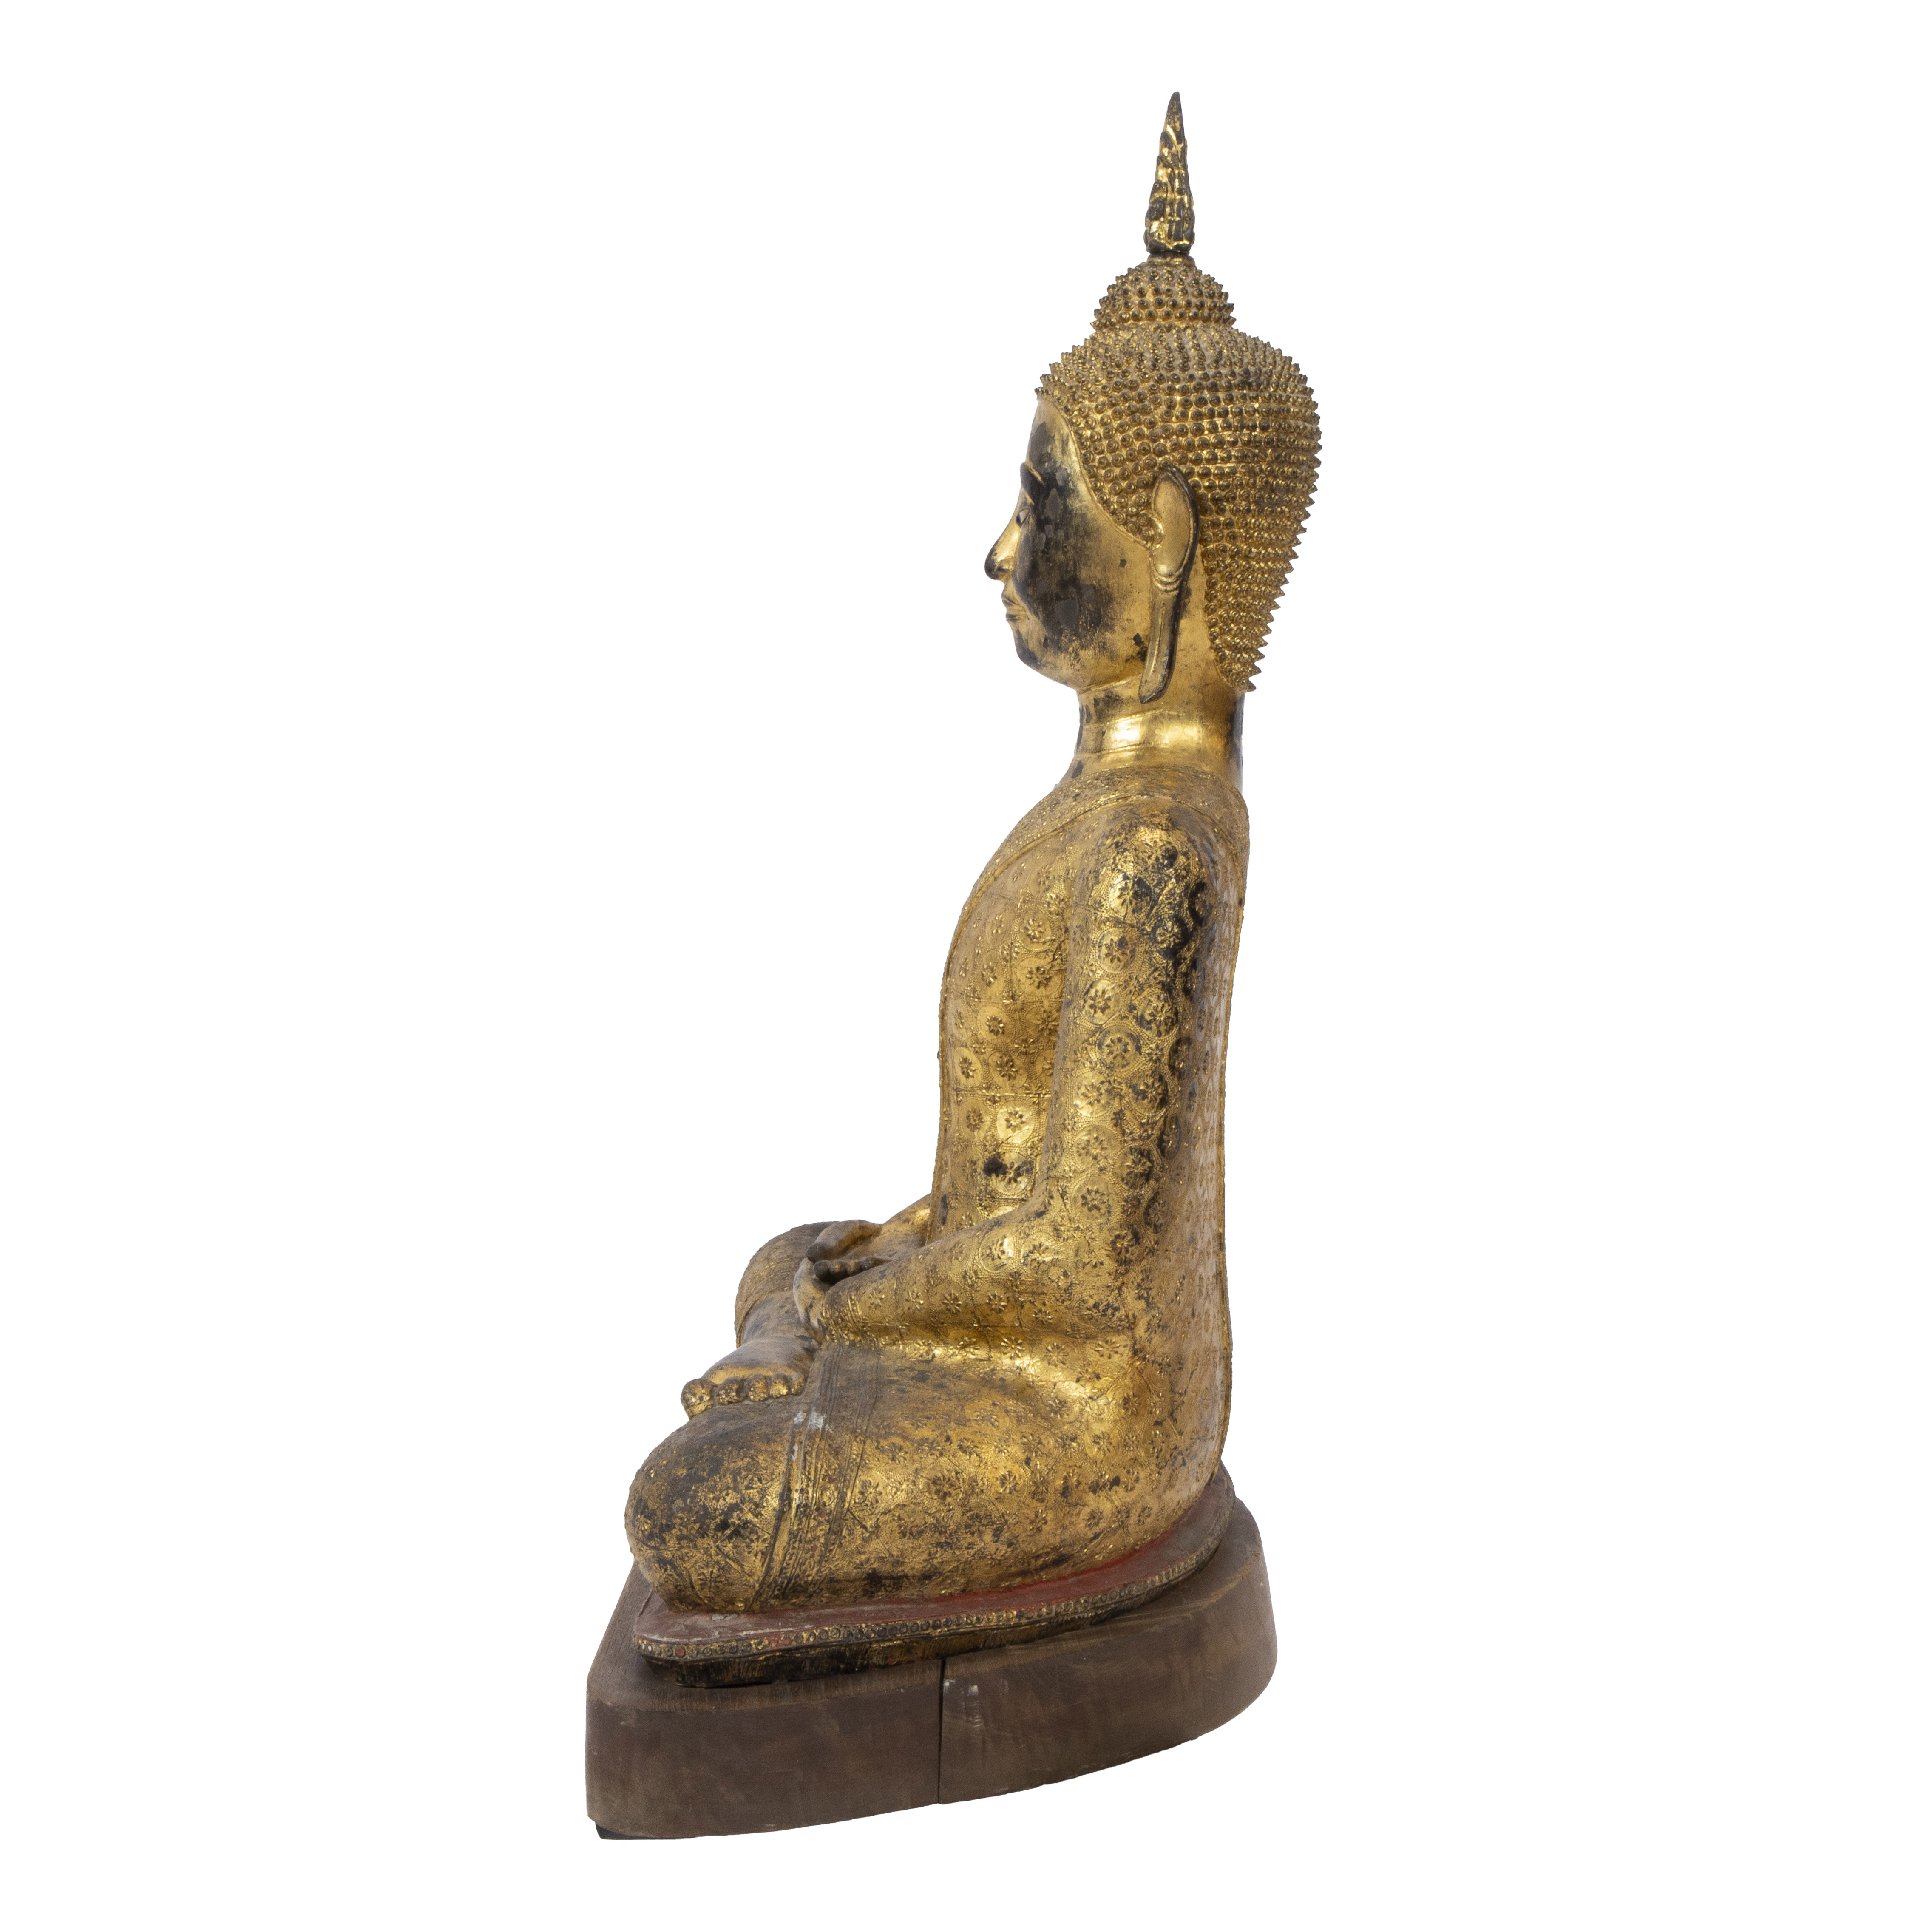 Rattanakosin gilded bronze Buddha, Thailand - Image 2 of 3